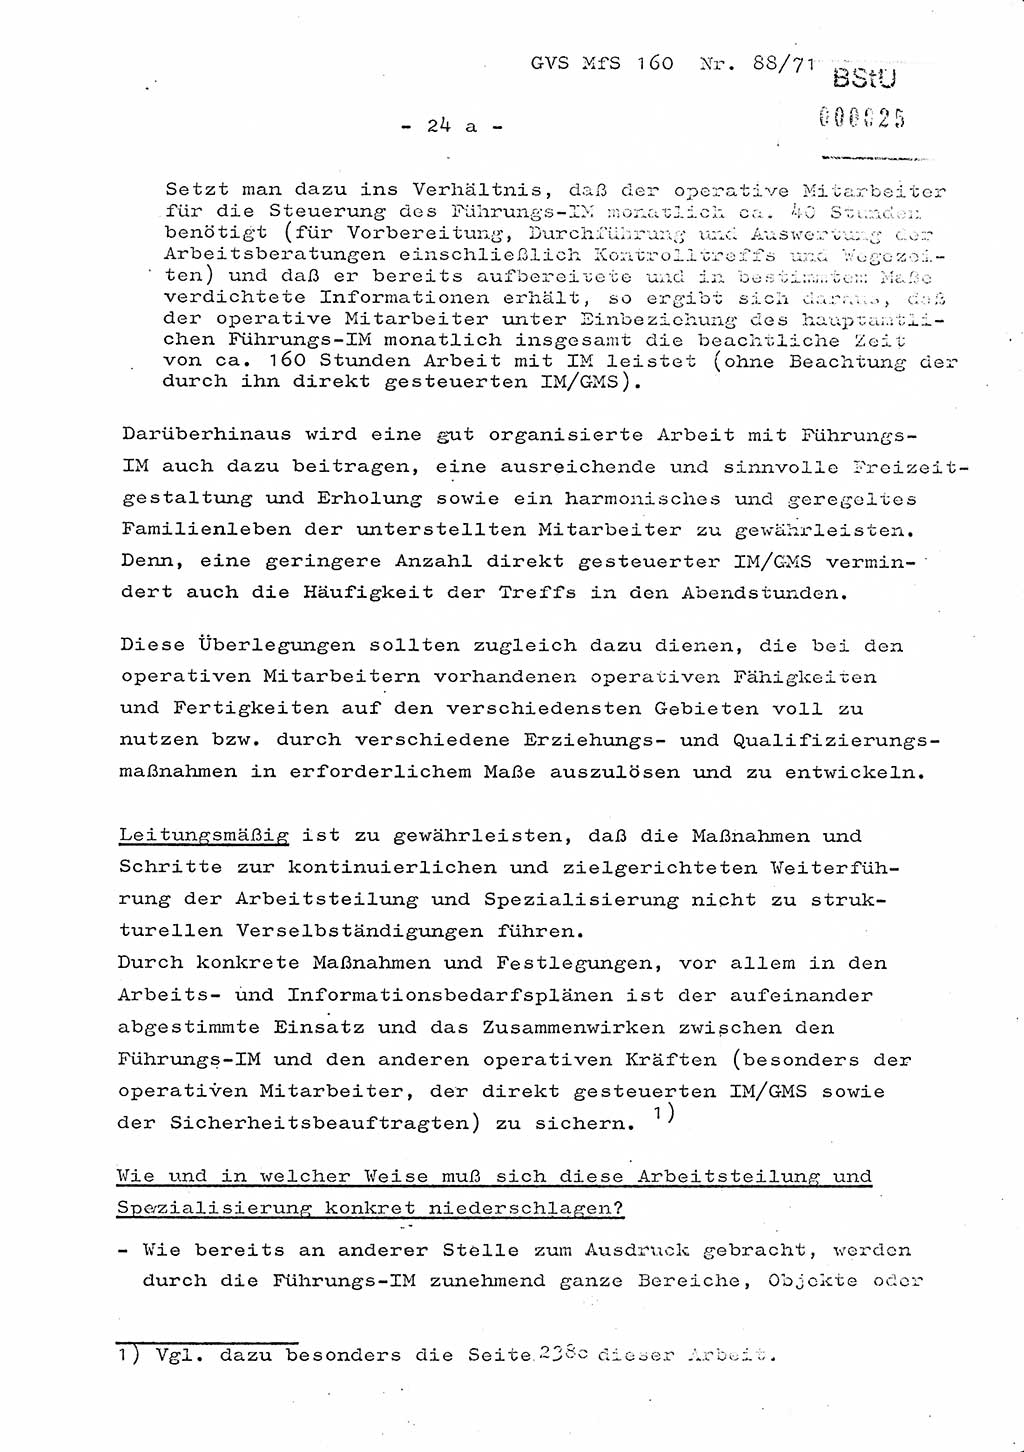 Dissertation Oberstleutnant Josef Schwarz (BV Schwerin), Major Fritz Amm (JHS), Hauptmann Peter Gräßler (JHS), Ministerium für Staatssicherheit (MfS) [Deutsche Demokratische Republik (DDR)], Juristische Hochschule (JHS), Geheime Verschlußsache (GVS) 160-88/71, Potsdam 1972, Seite 24/1 (Diss. MfS DDR JHS GVS 160-88/71 1972, S. 24/1)